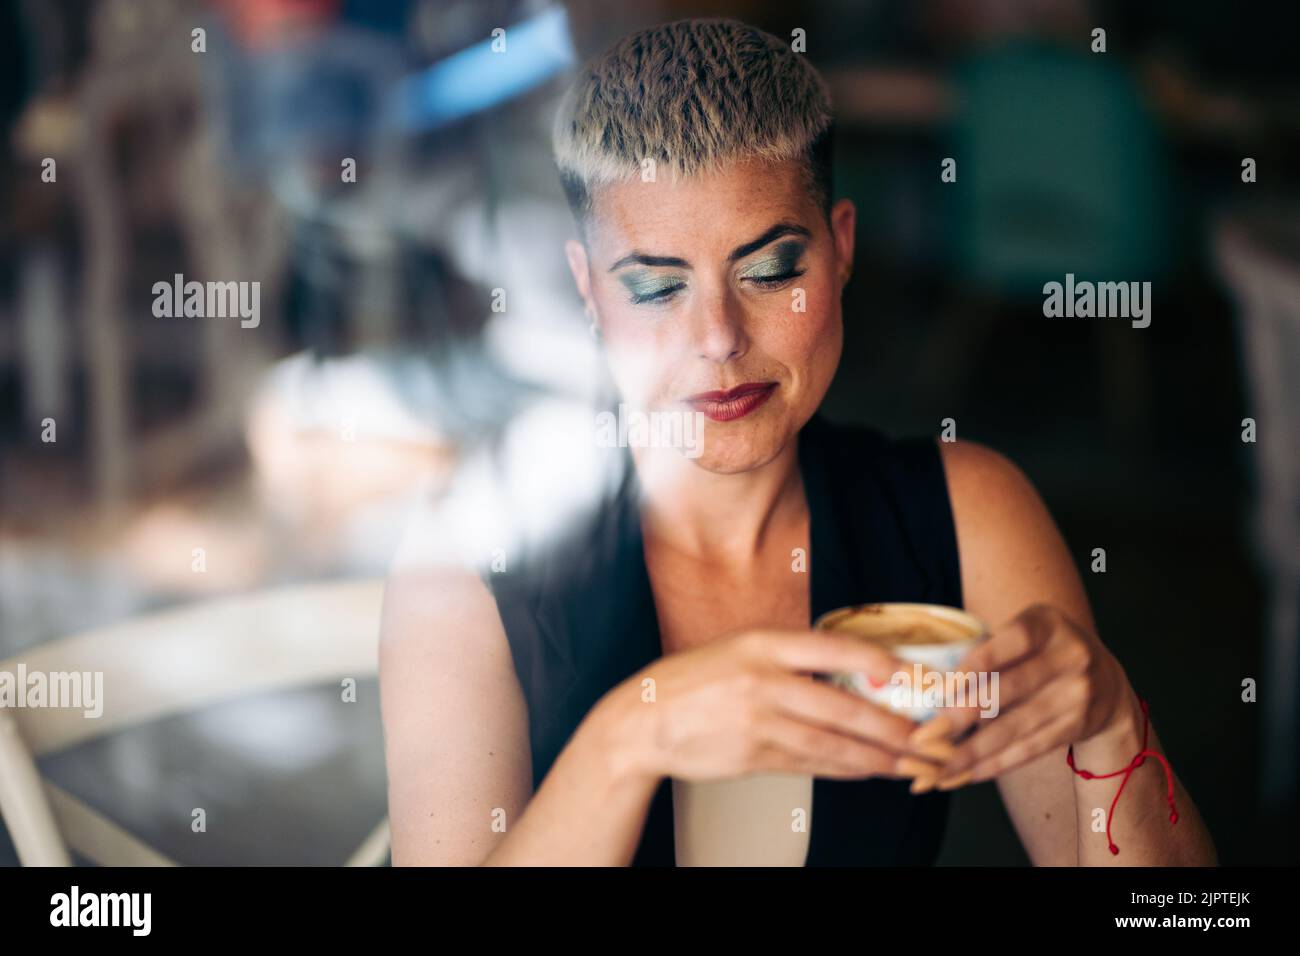 Nachdenkliche Frau mit kurzen Haaren, die einen Kaffee von außerhalb eines Fensters hält Stockfoto